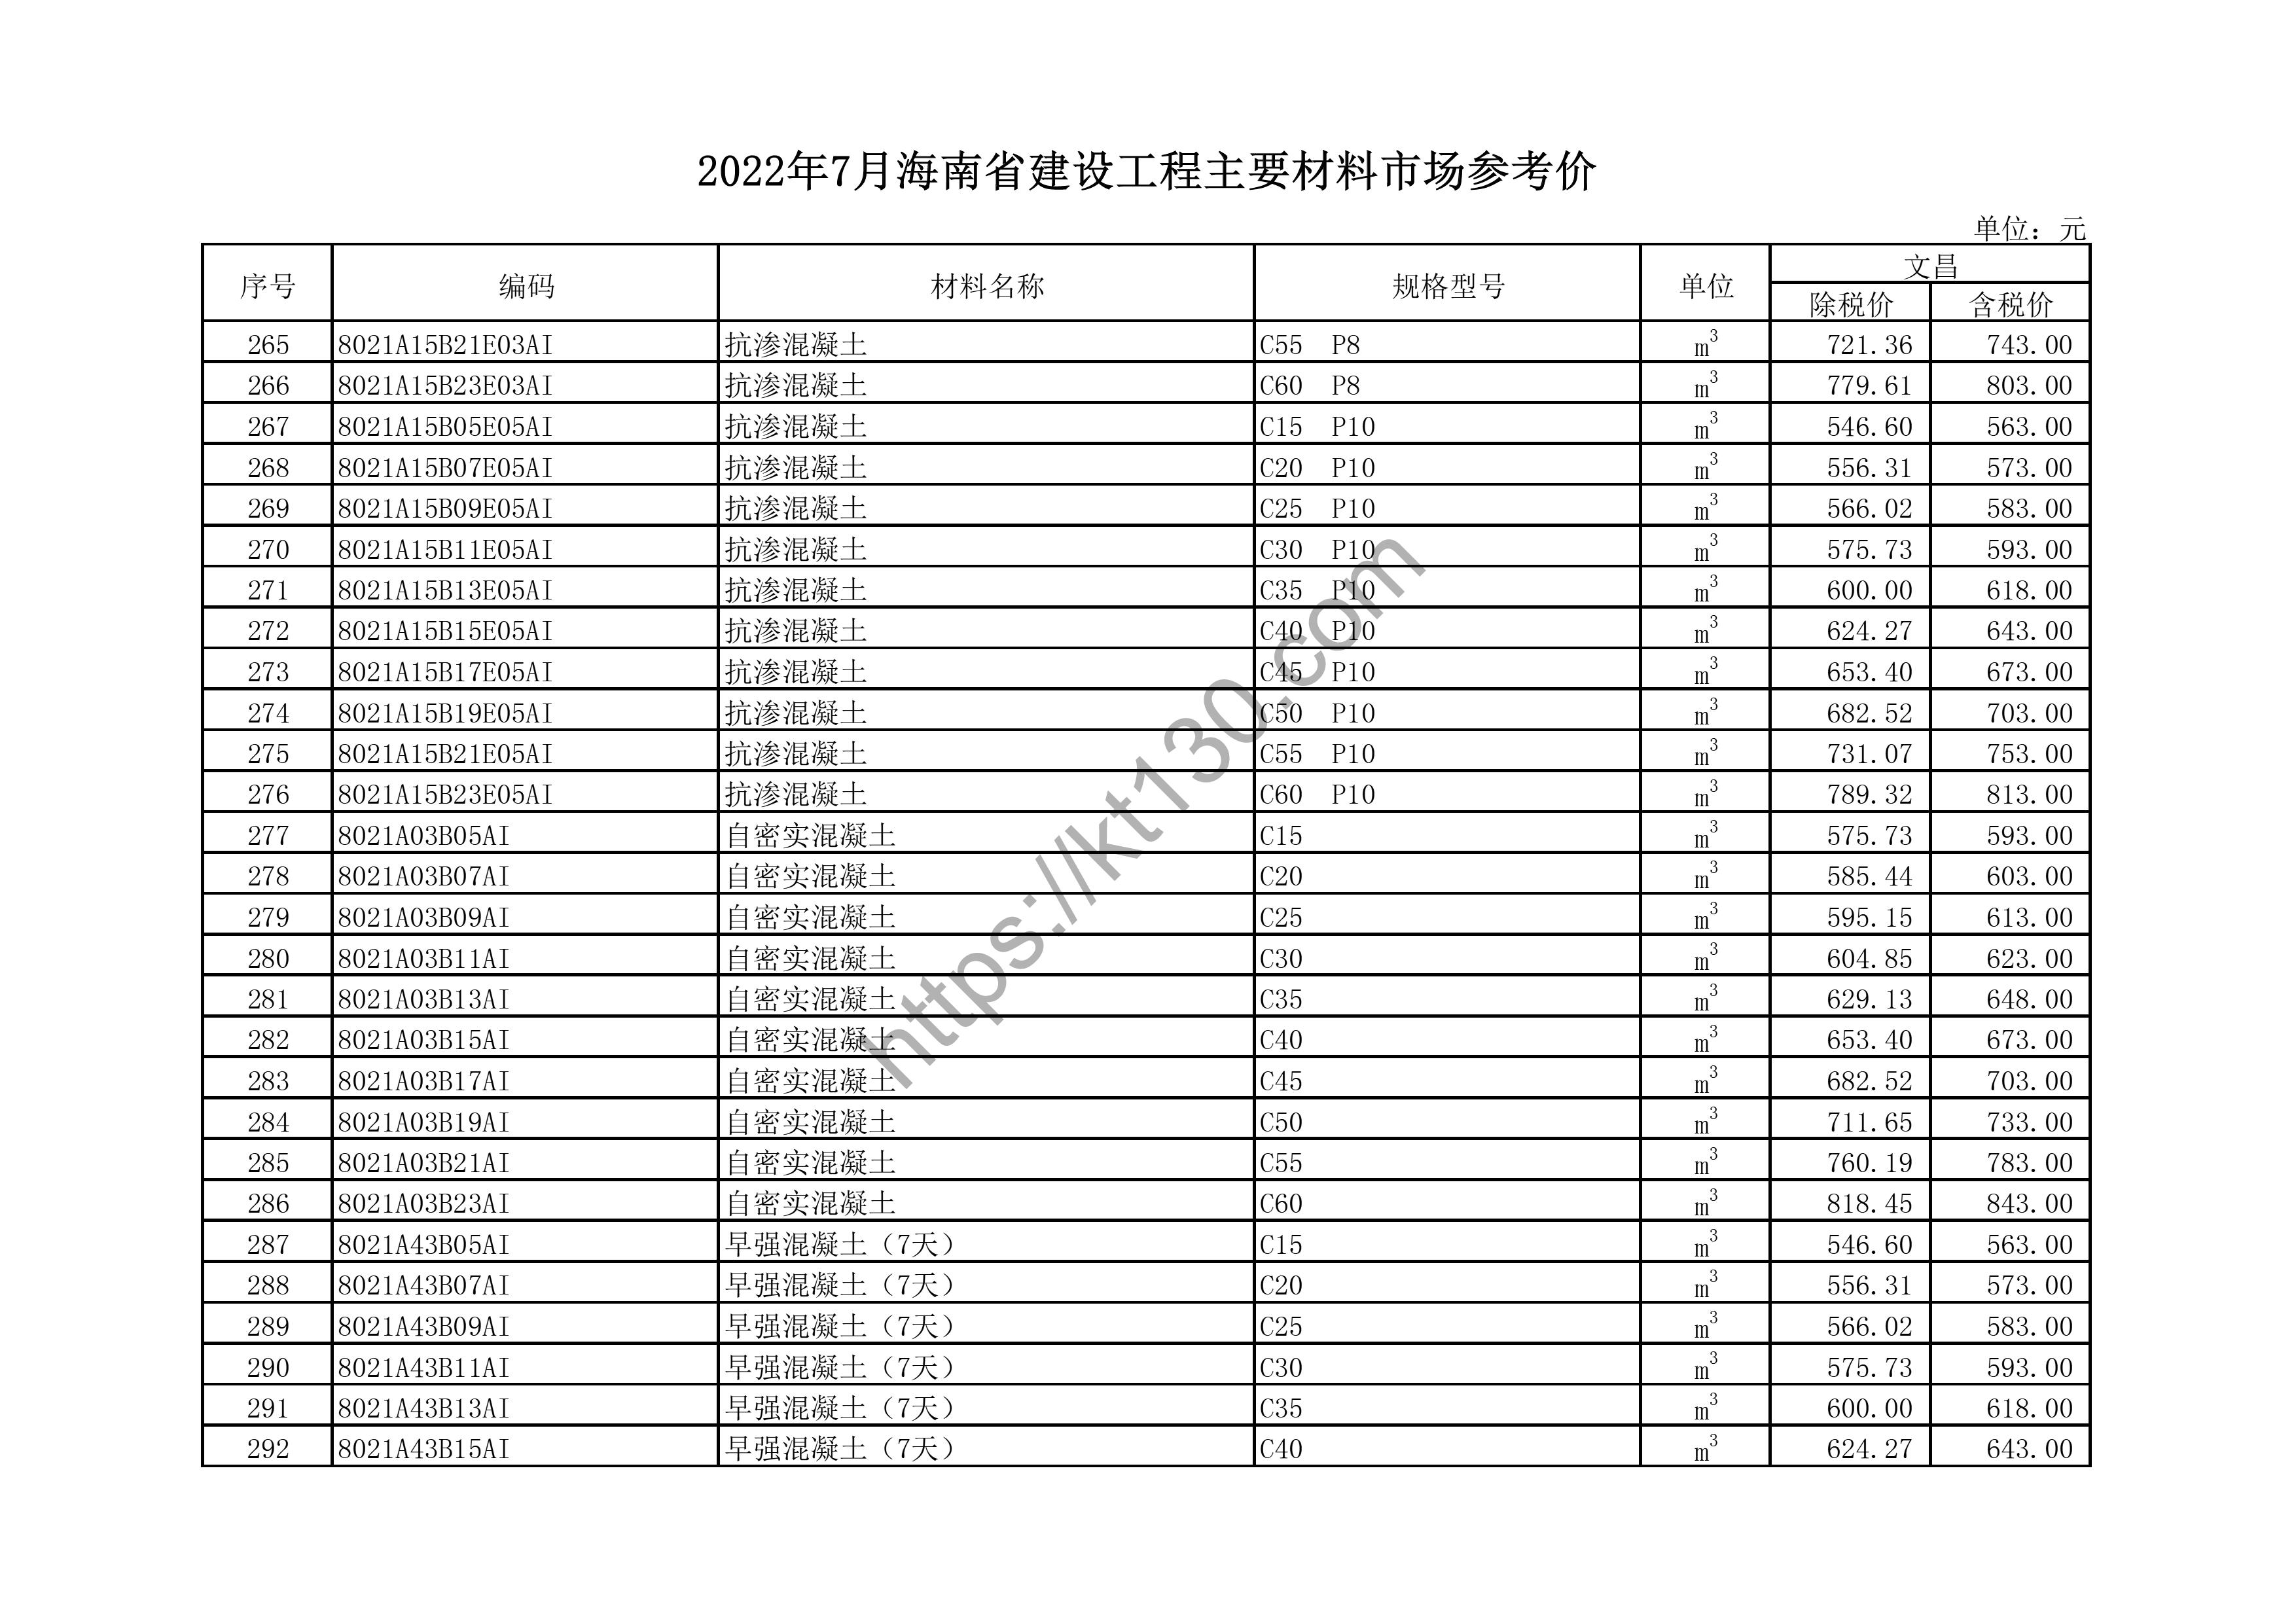 海南省2022年7月建筑材料价_PVC排水管